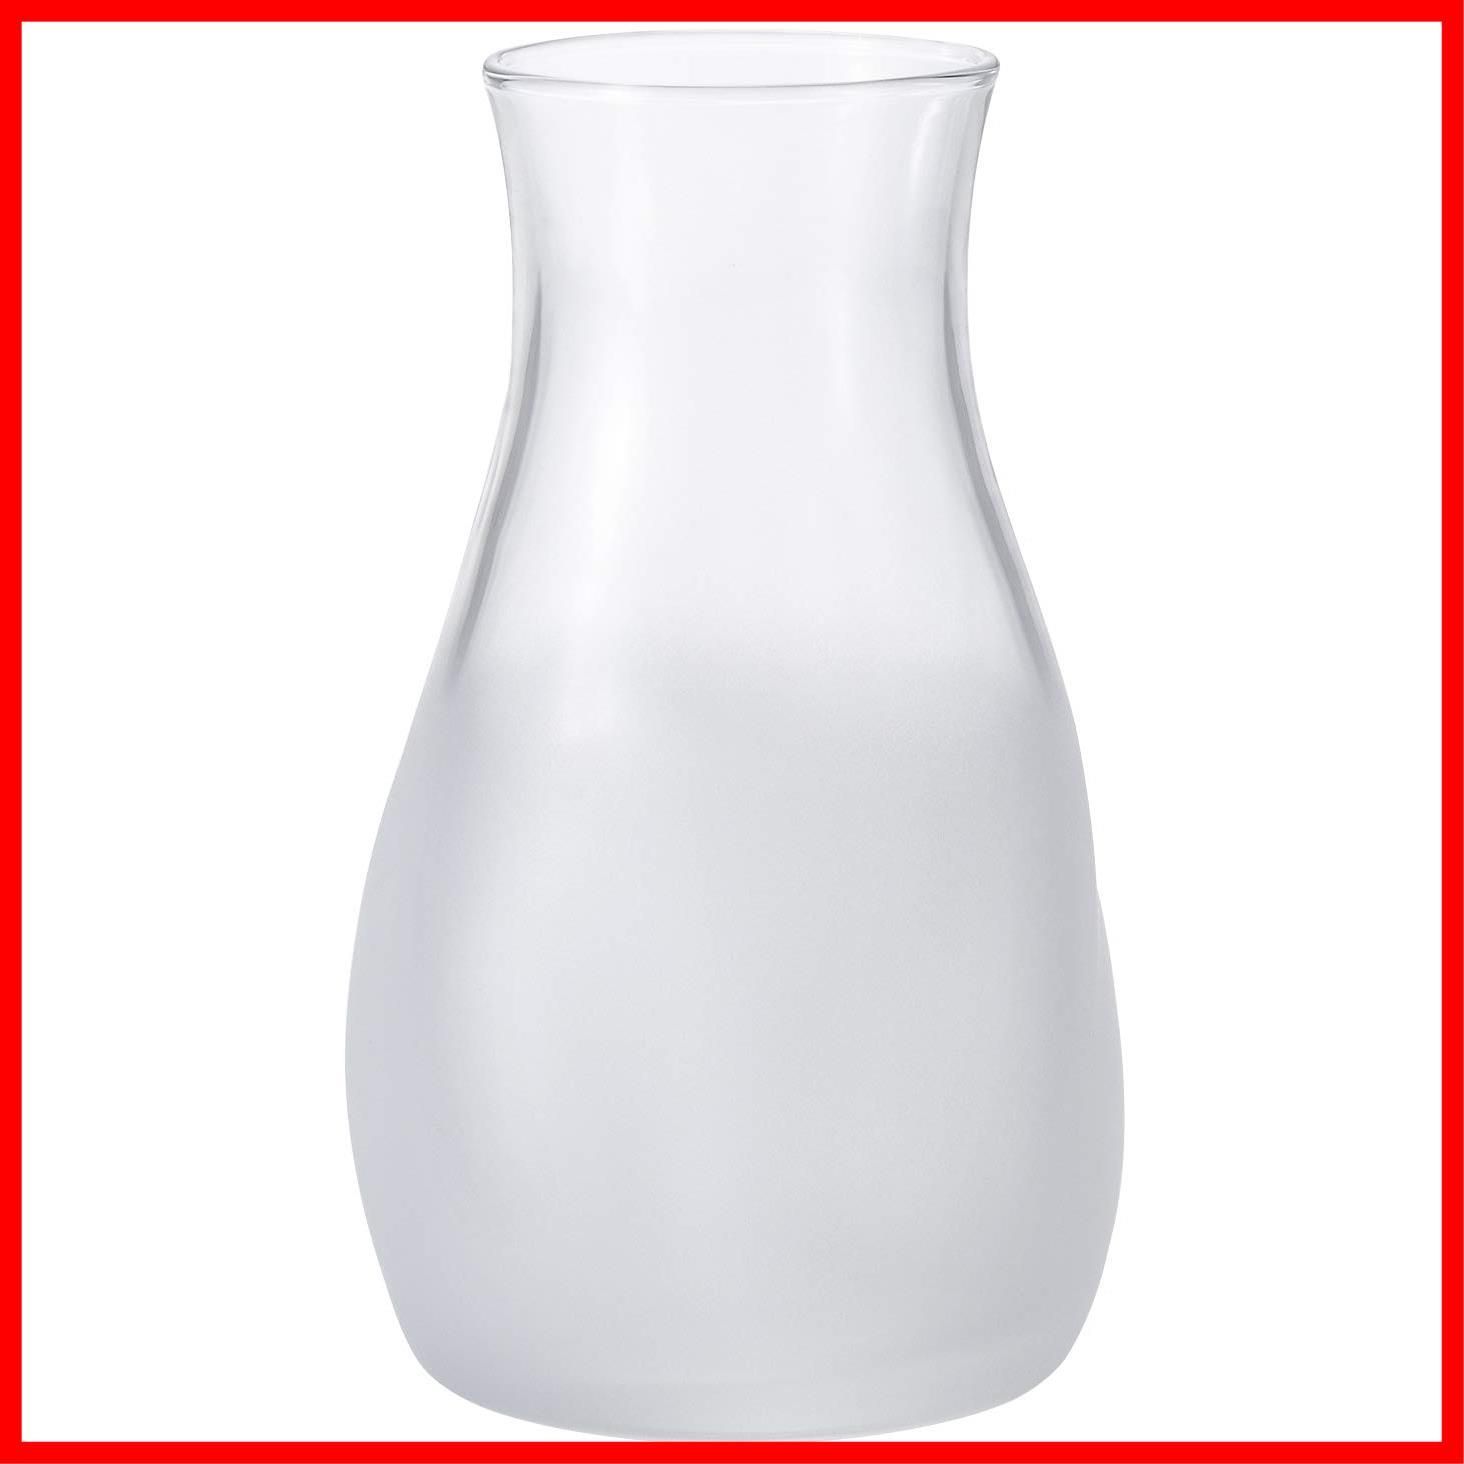 アデリア 花瓶 ガラス花瓶 てびねりミニ花器 ホワイト [直径約7.7x高さ12.9cm] 日本製 9571